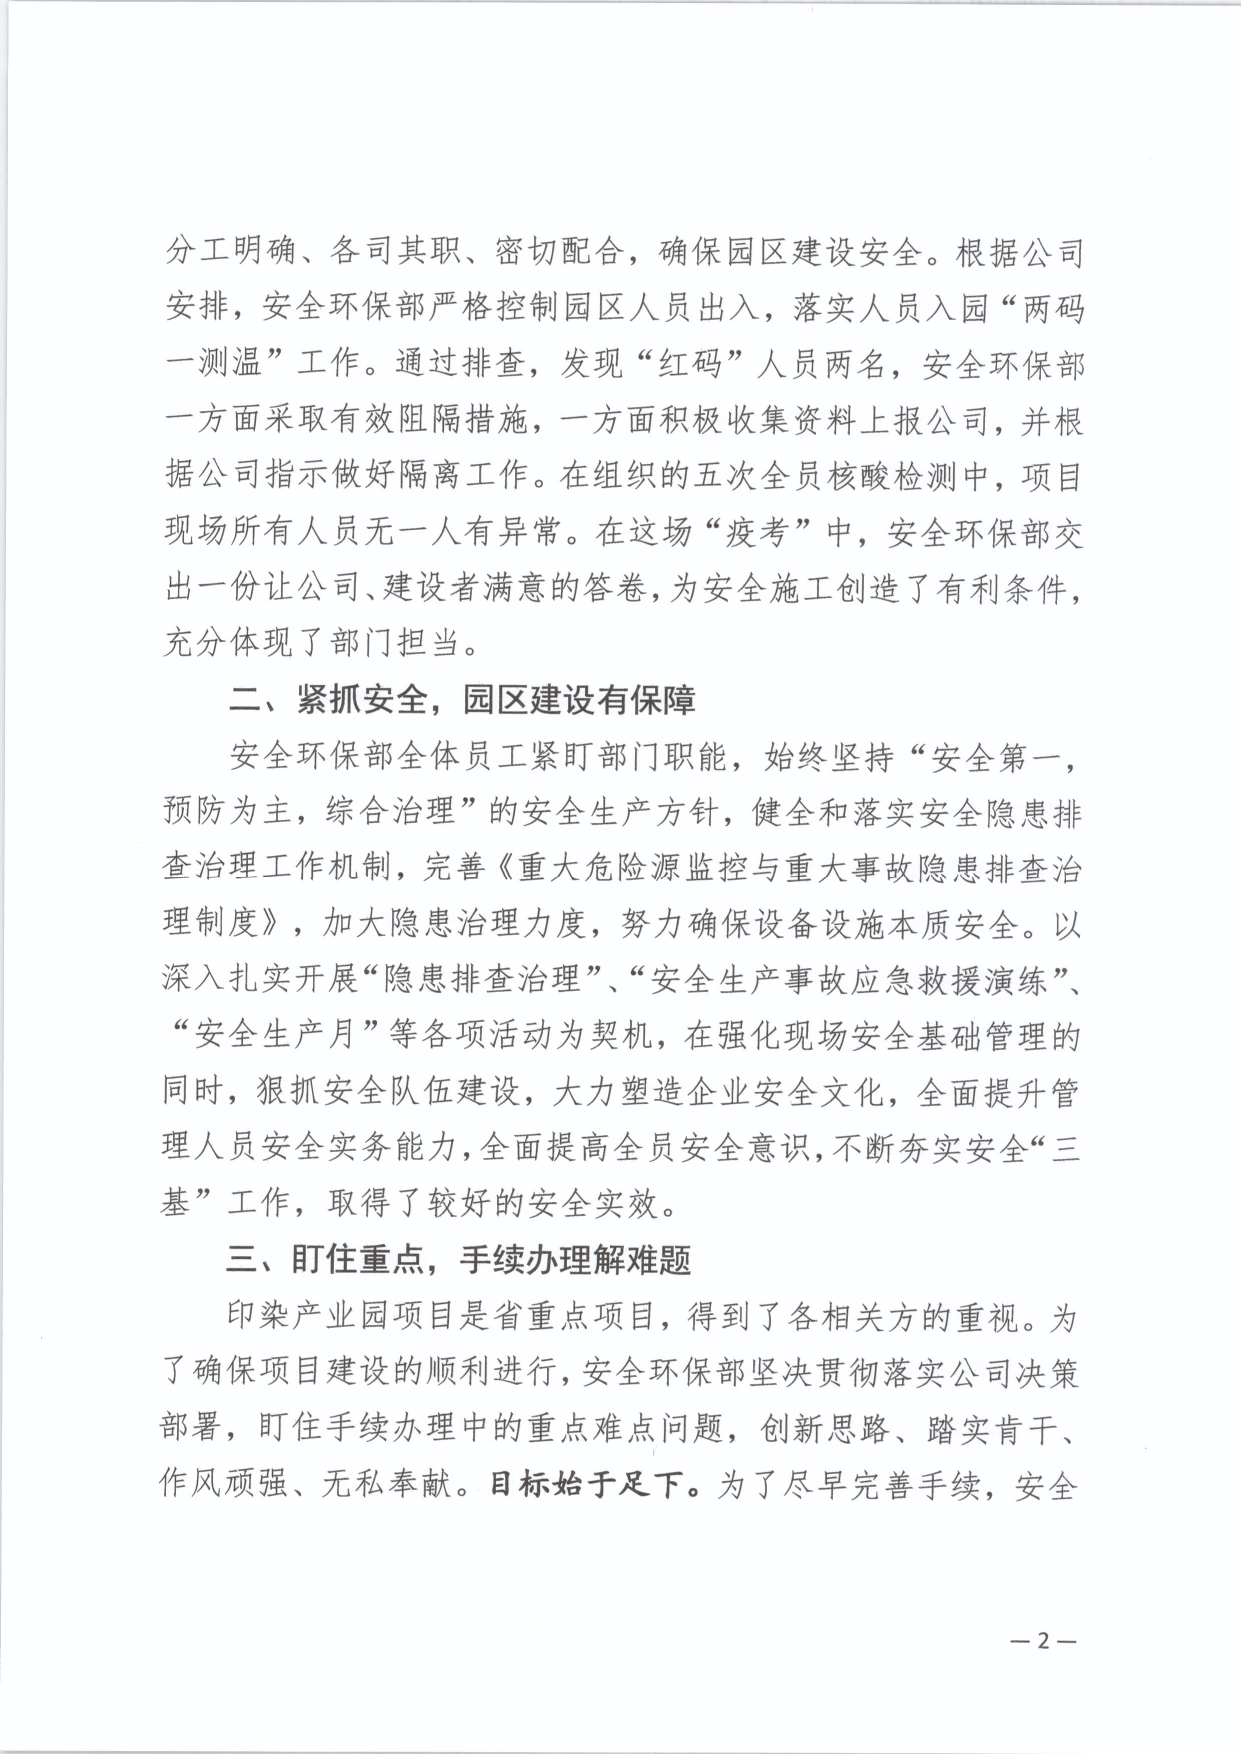 夏百建26号 - 关于对夏邑县百老汇建设开发有限公司安全环保部的表彰通报(图2)